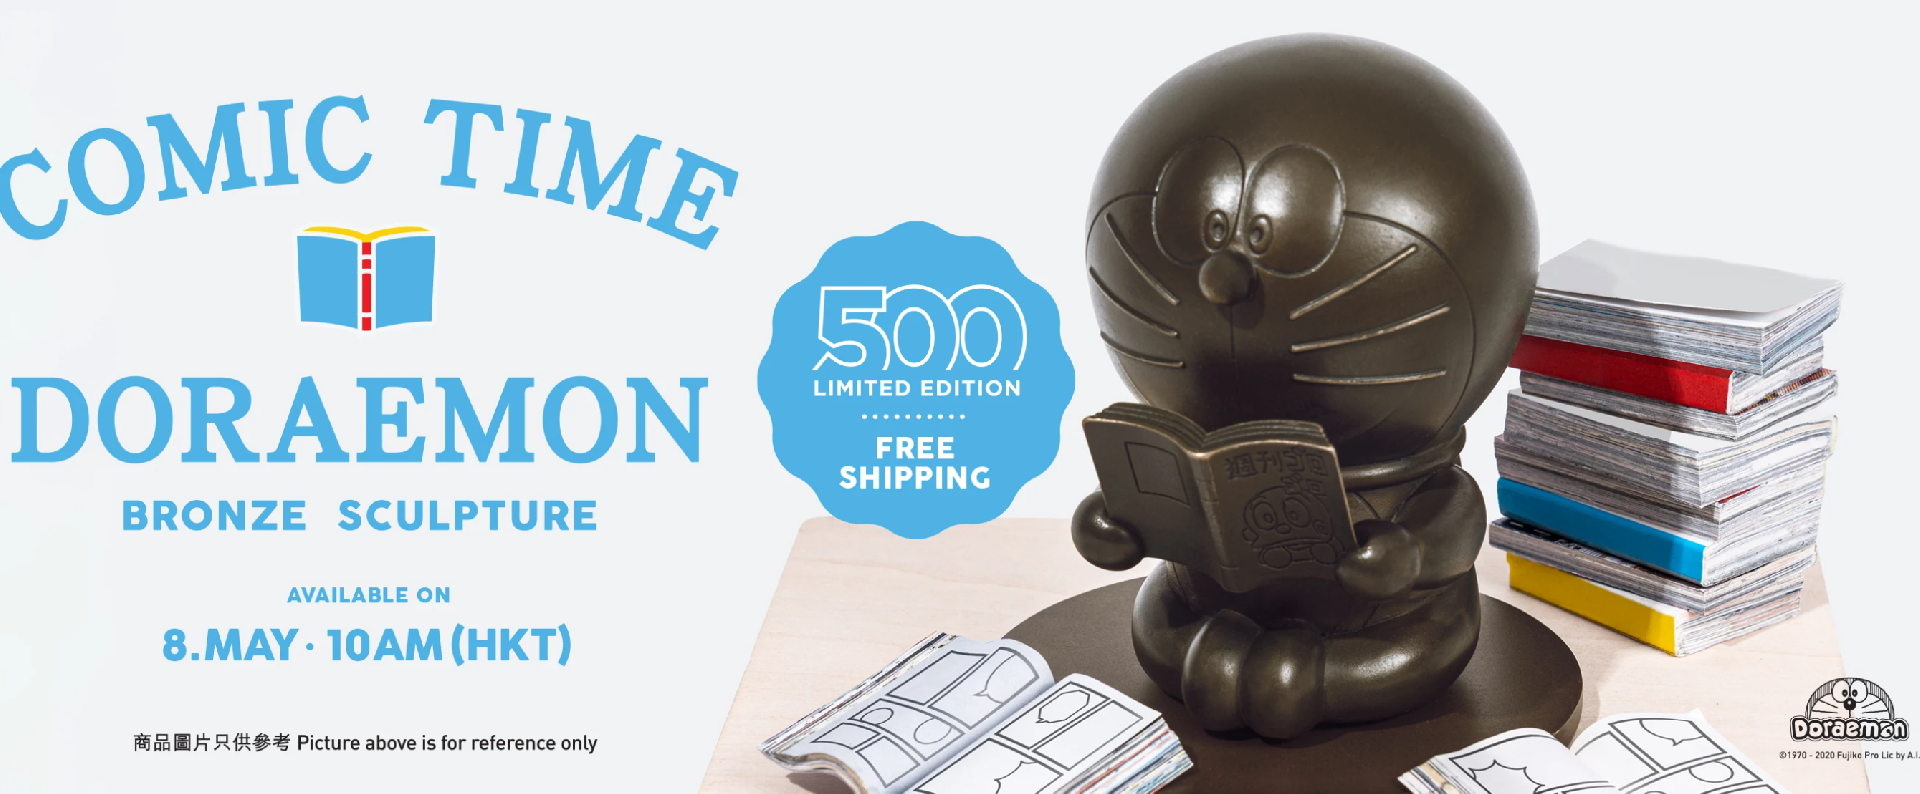 【限量】香港 DING DONG 宅配便推出500個漫畫迷造型哆啦A夢小銅像